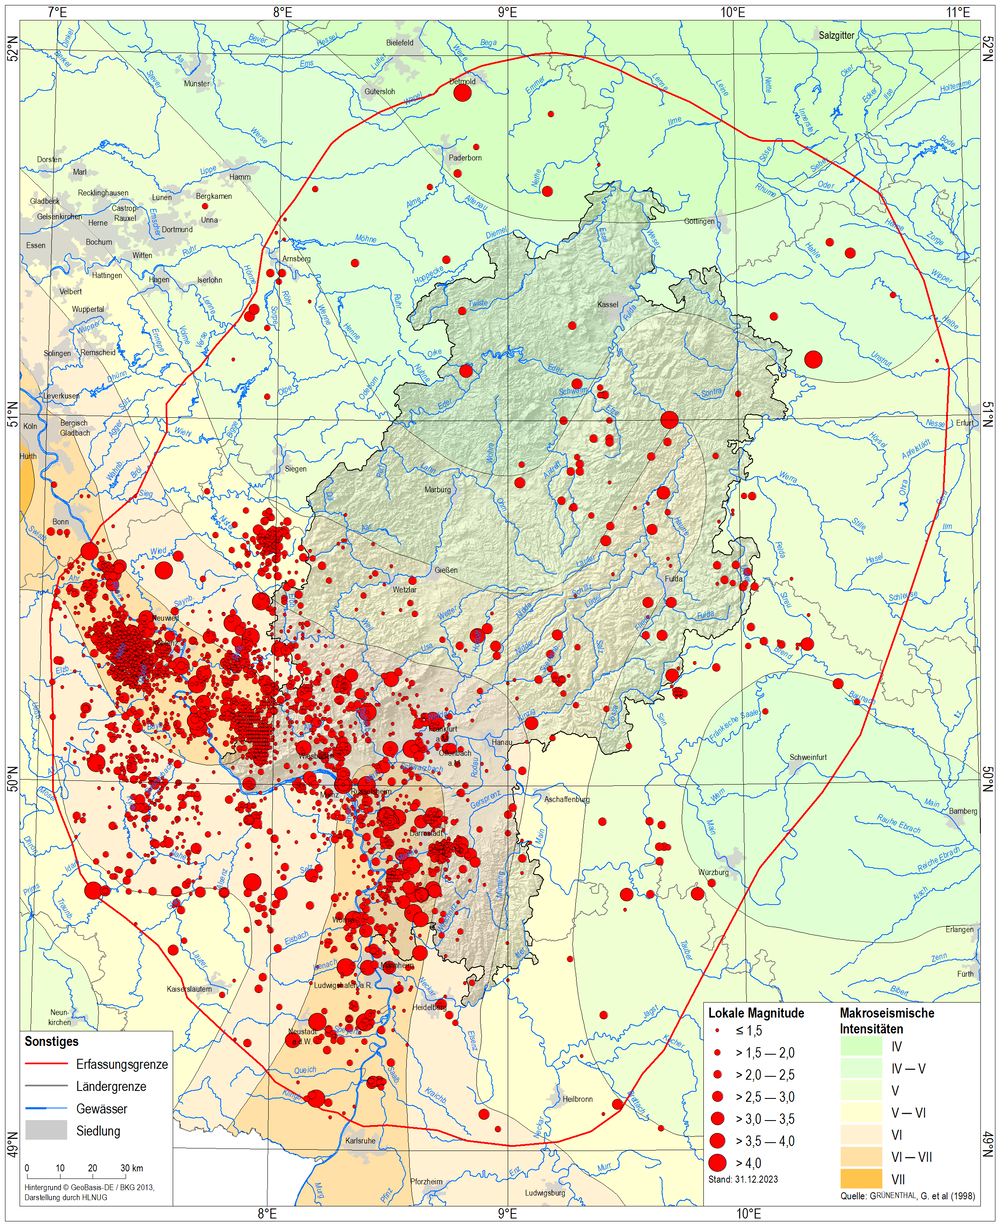 Erdbebenverteilung in Hessen nach Hessischem Erdbebenkatalog